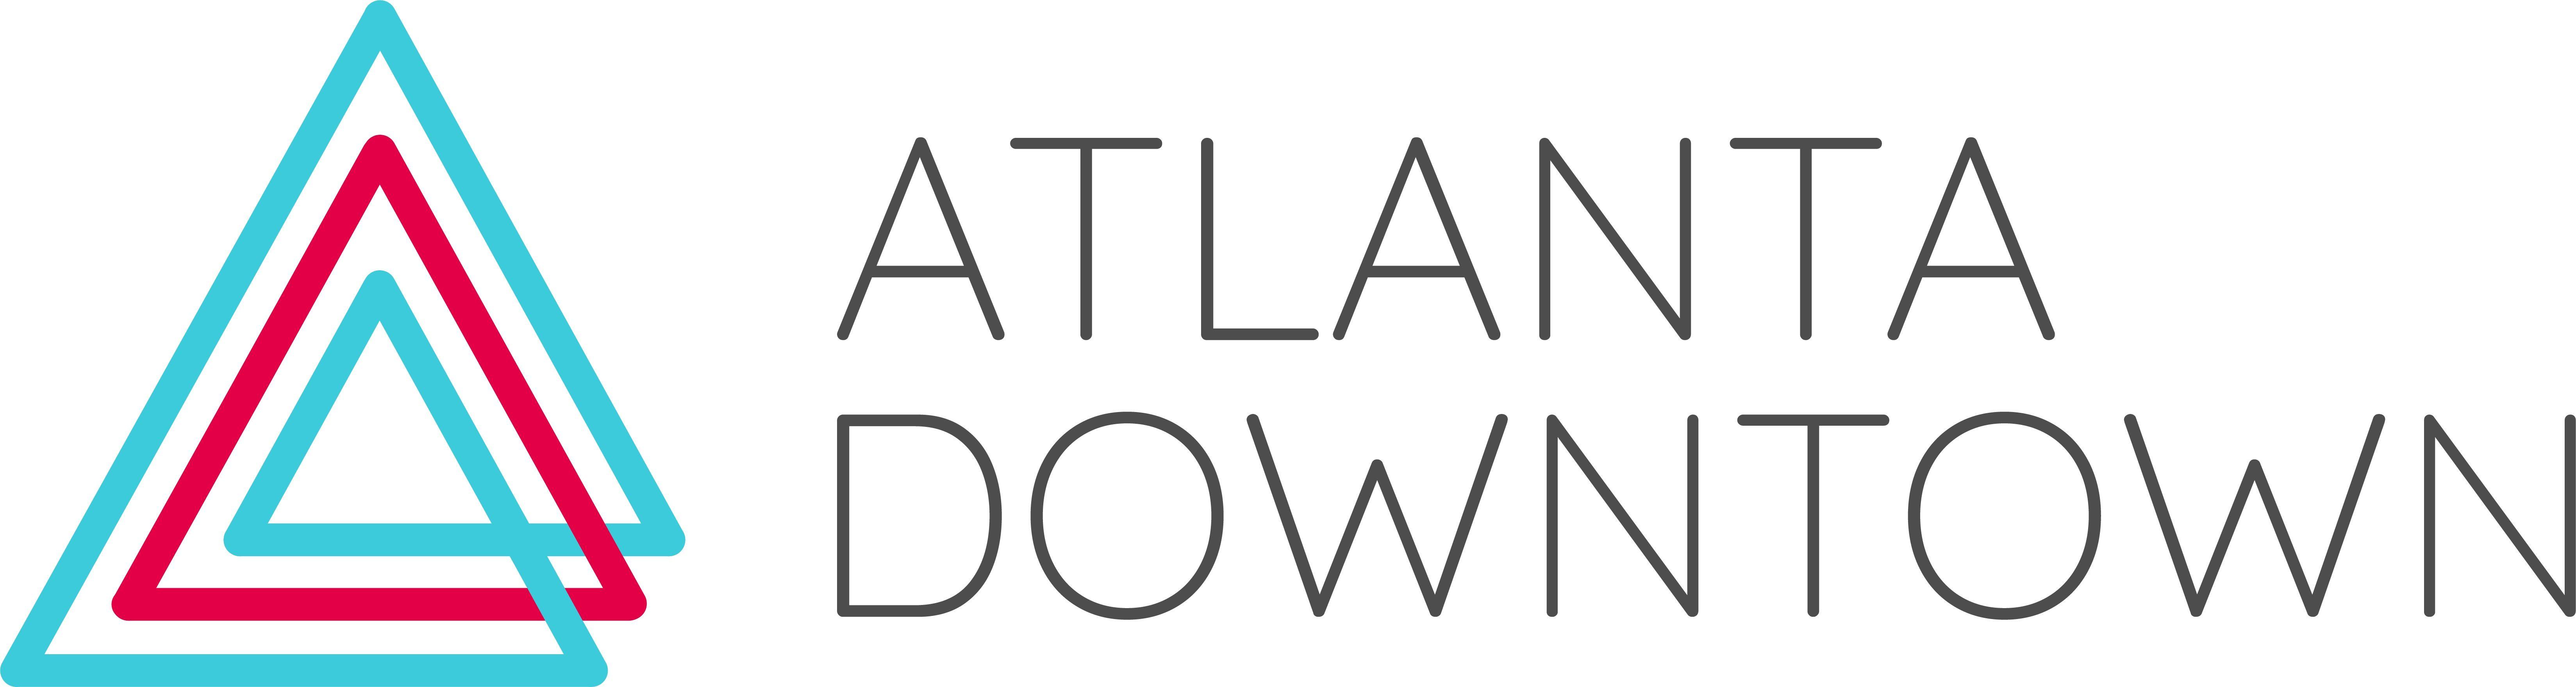 ATL Logo - ATL DTN